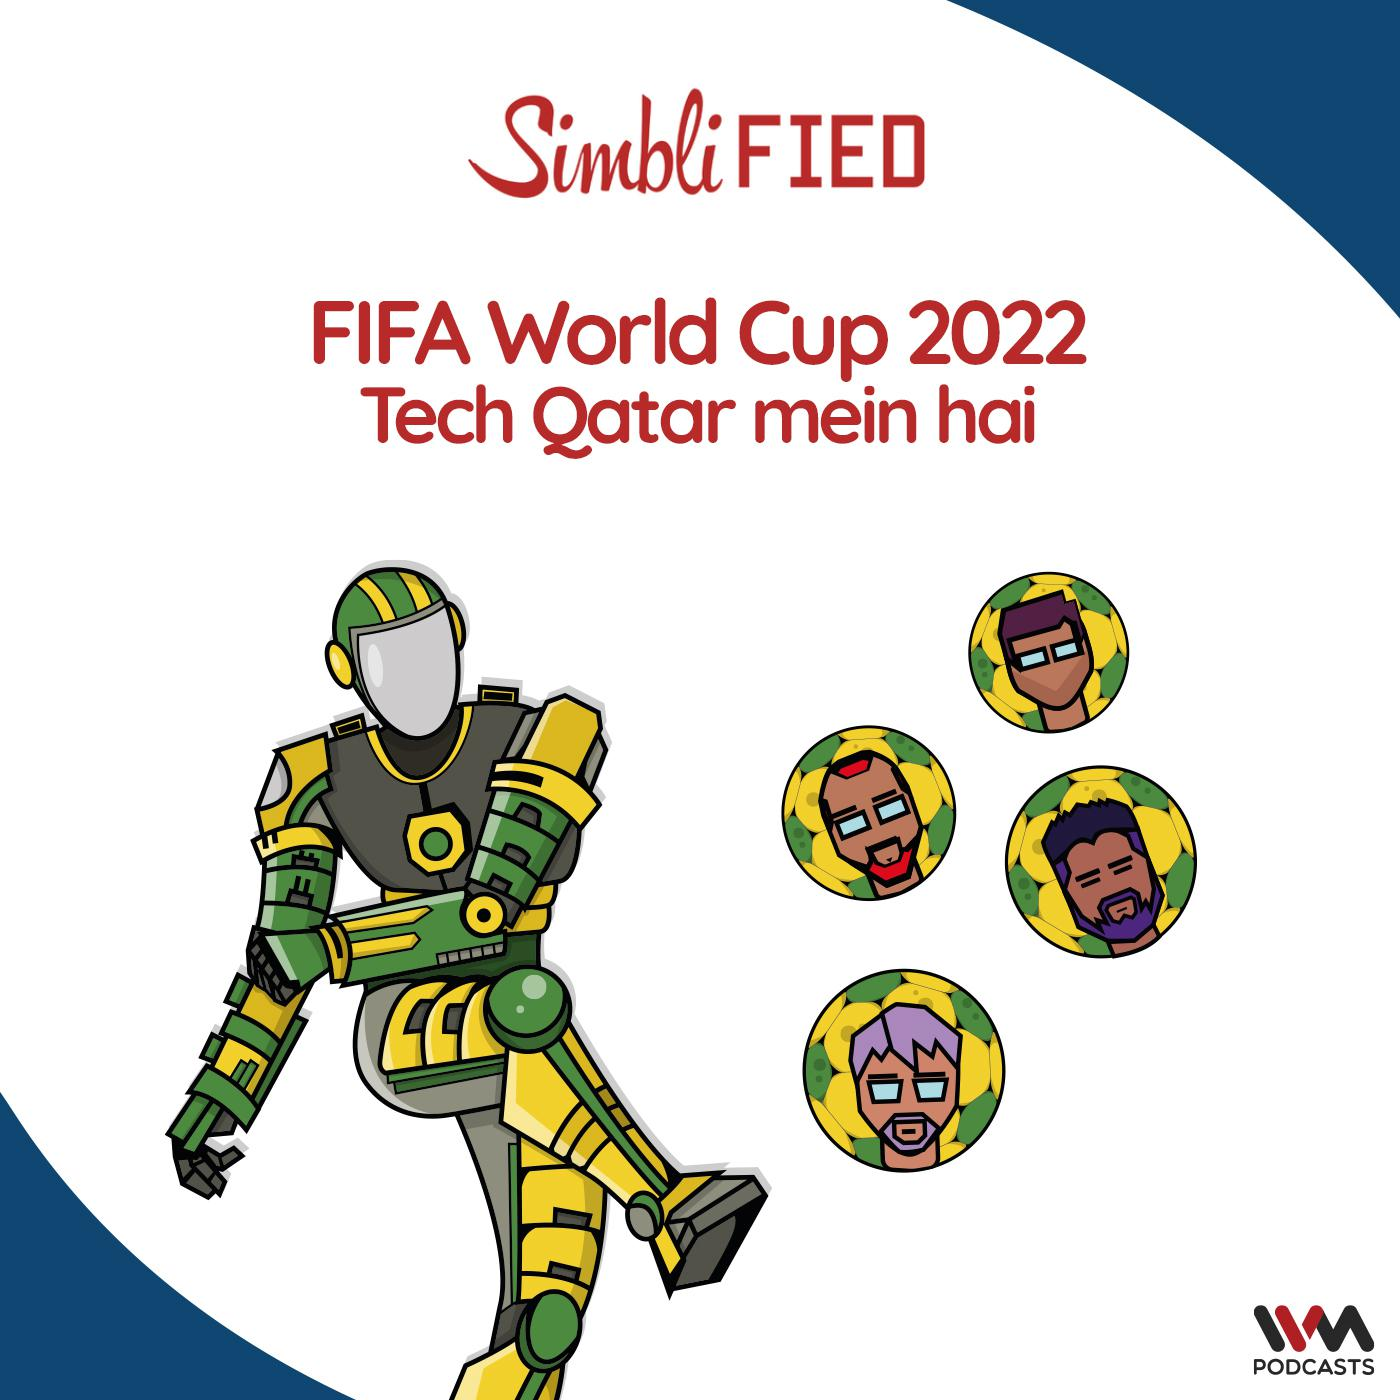 FIFA World Cup 2022 - Tech Qatar mein hai